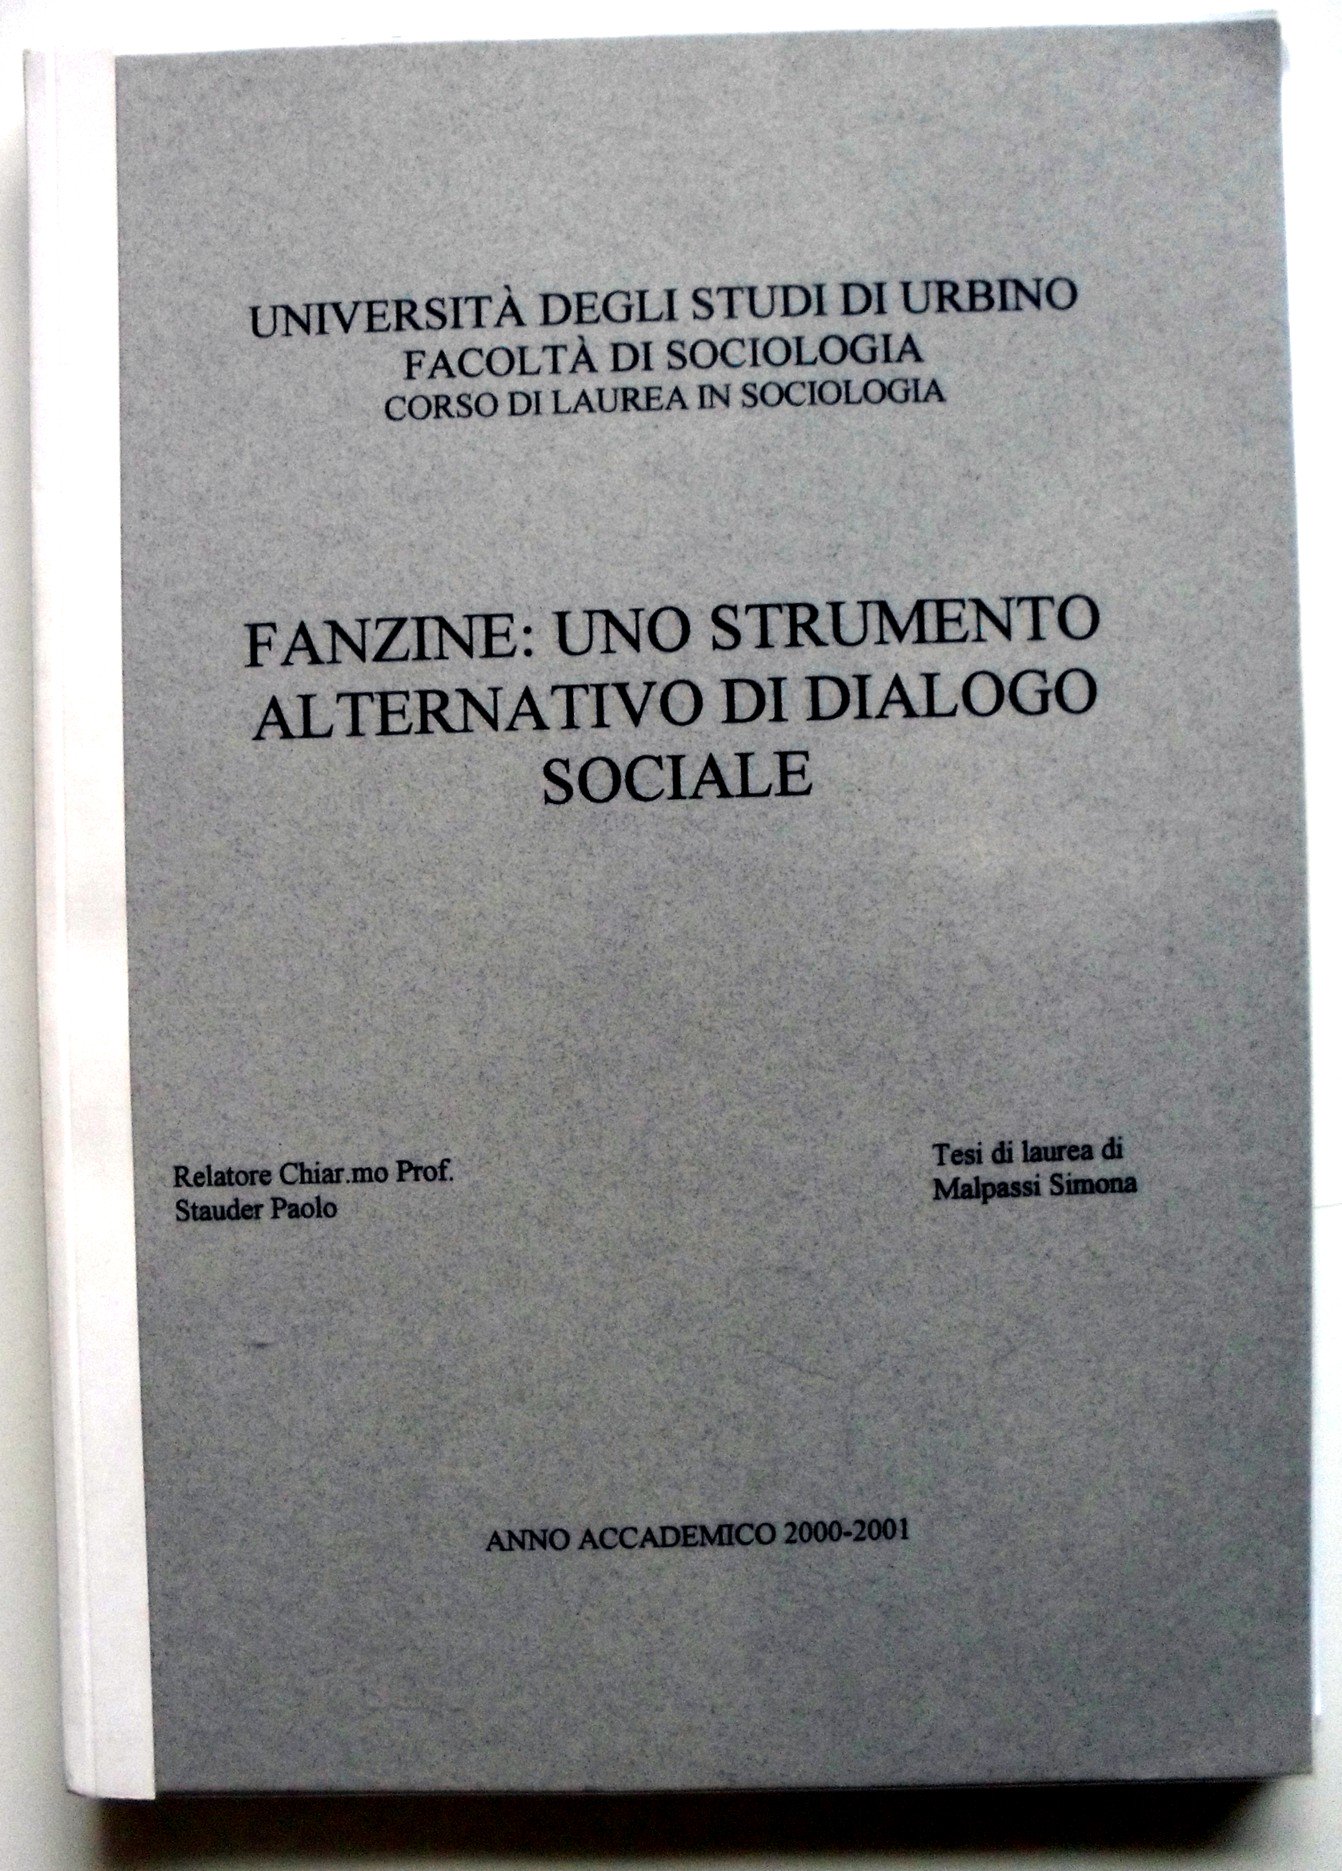 Centro Nazionale Studi Fanzine - Fanzinoteca d'Italia 0.2 - Mappatura Tesi di Laurea Fanzine - Tesi Malpassi Simona 2020